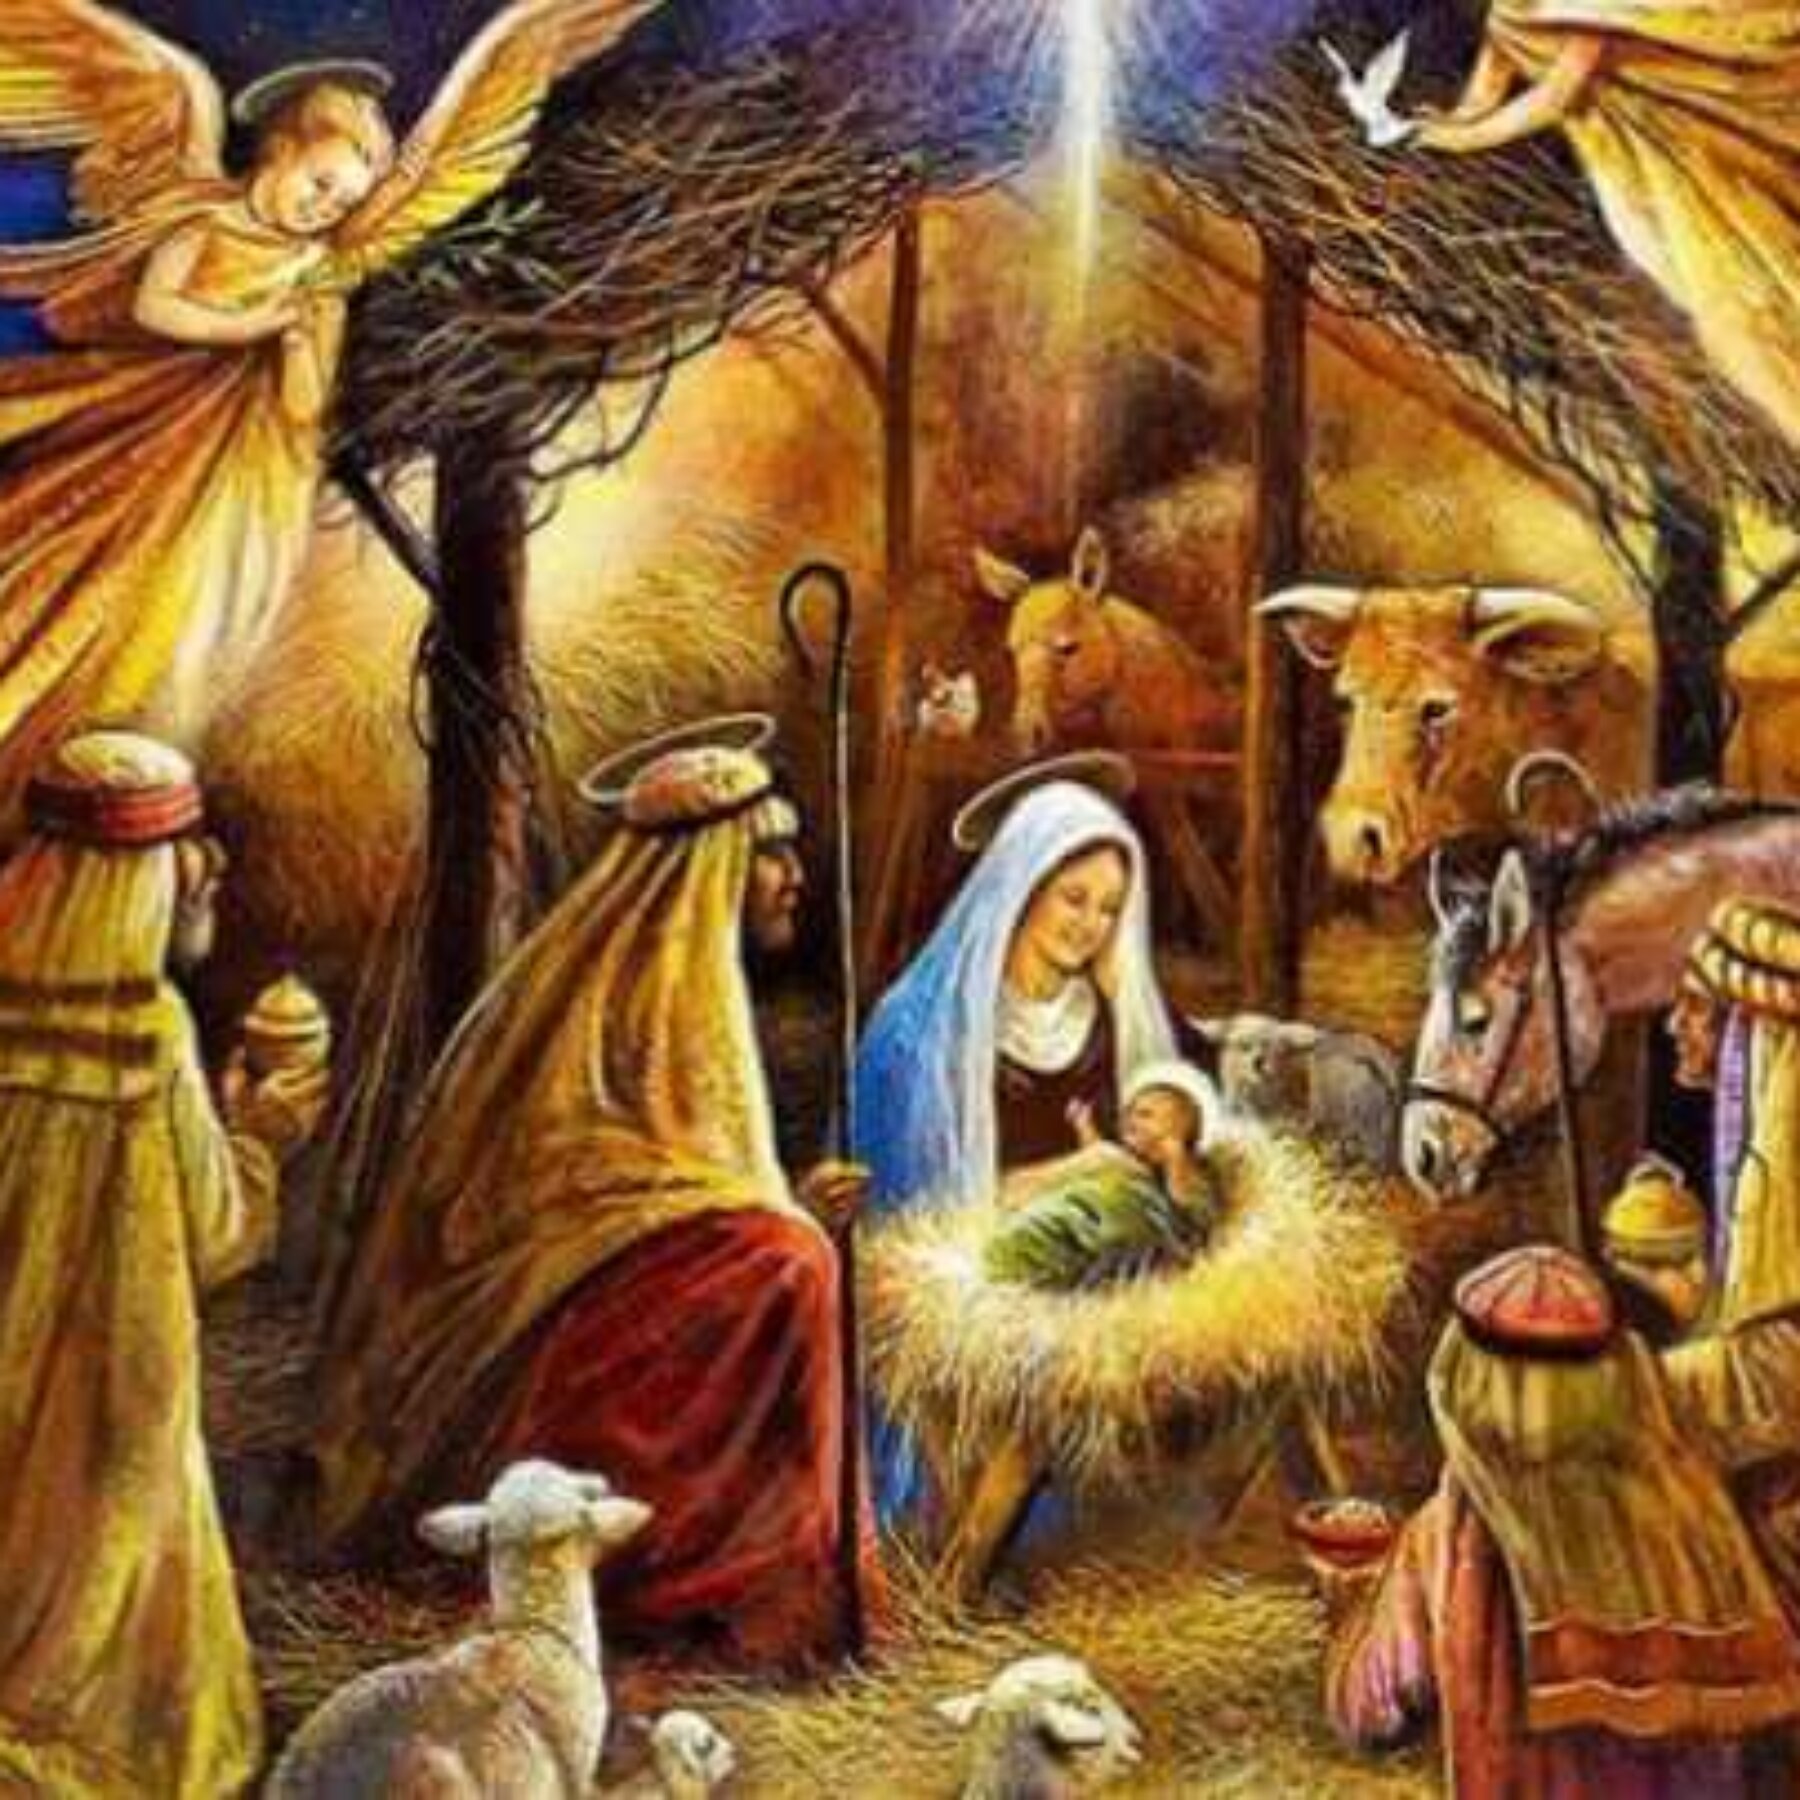 S-a născut Isus și în inima ta?